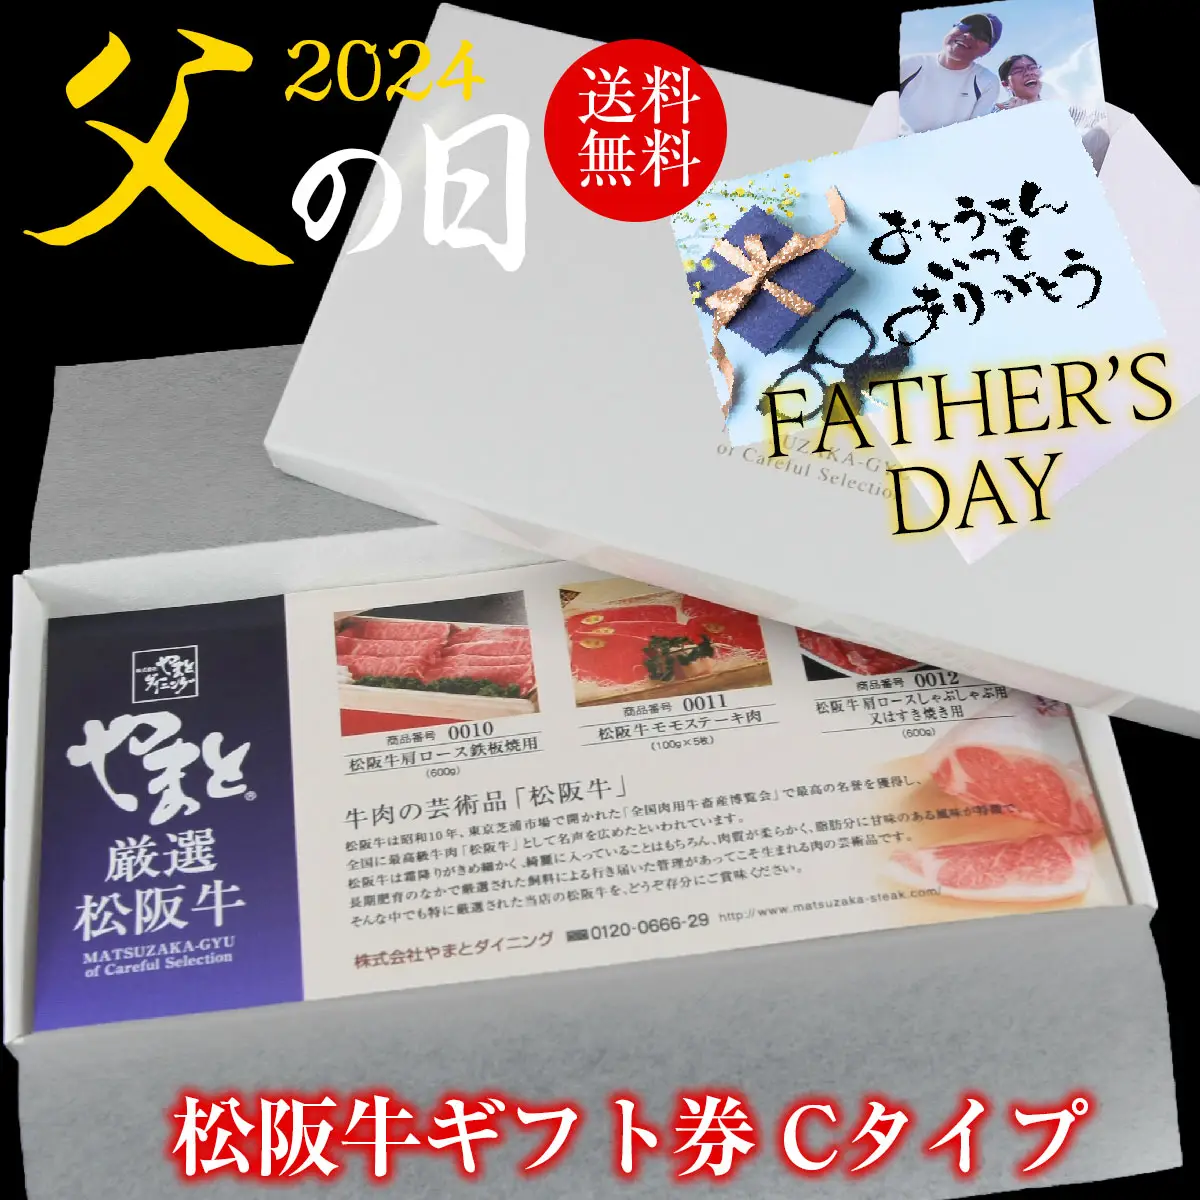 【父の日】松阪牛お肉のギフト券Cタイプ